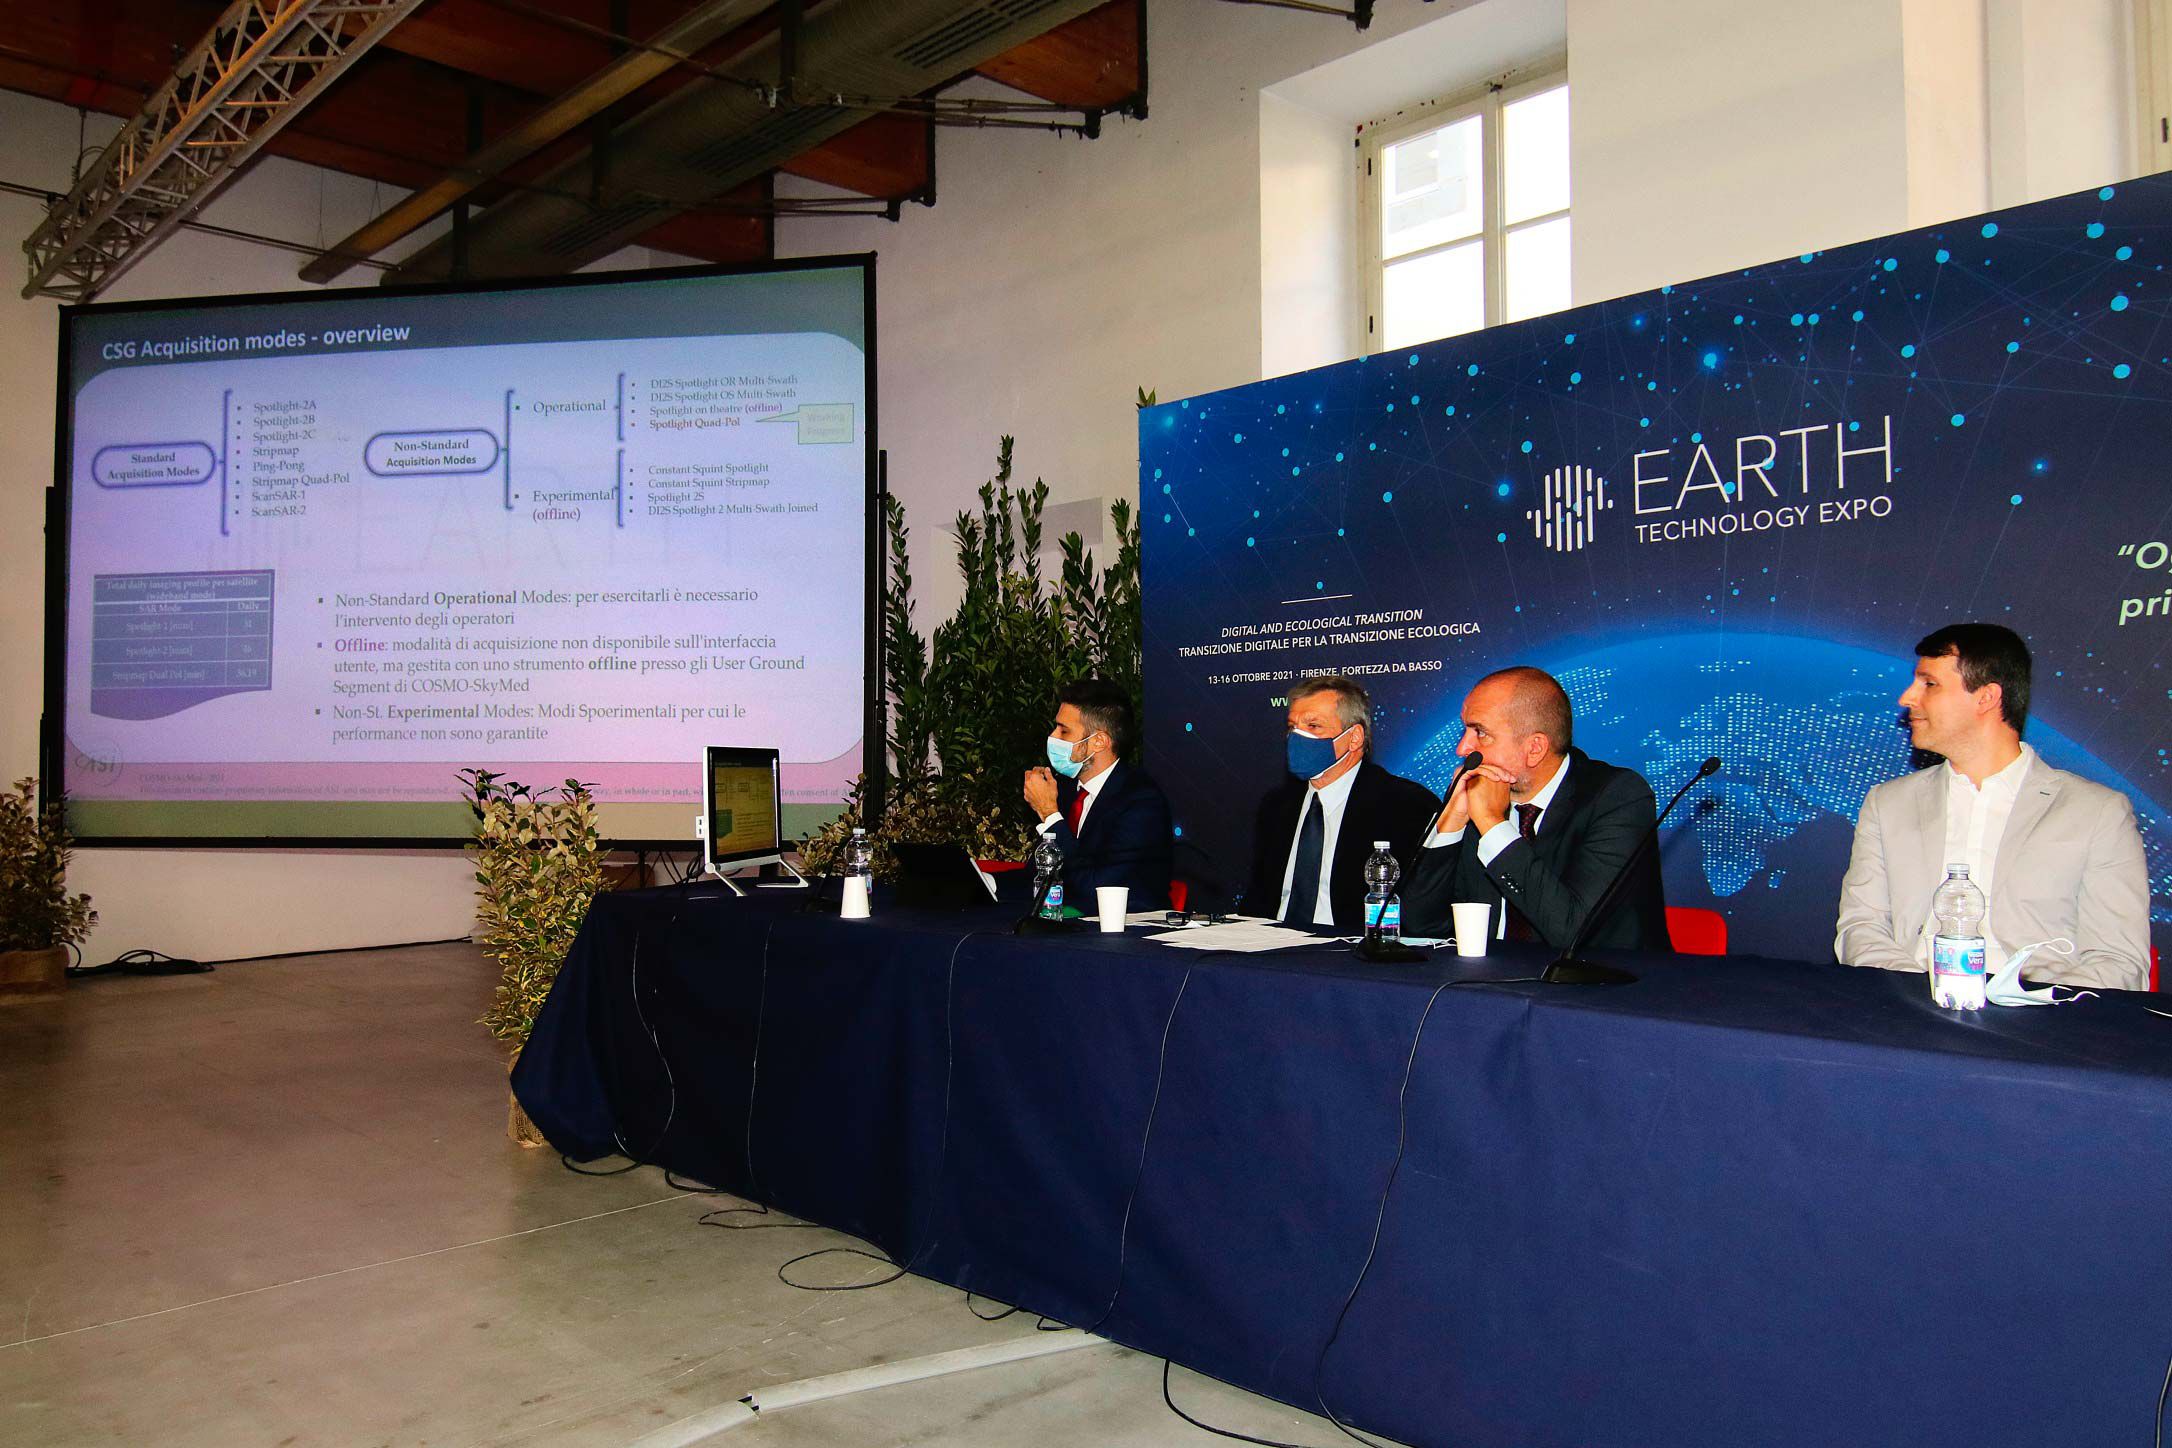 Earth Technology Expo ed. 2021